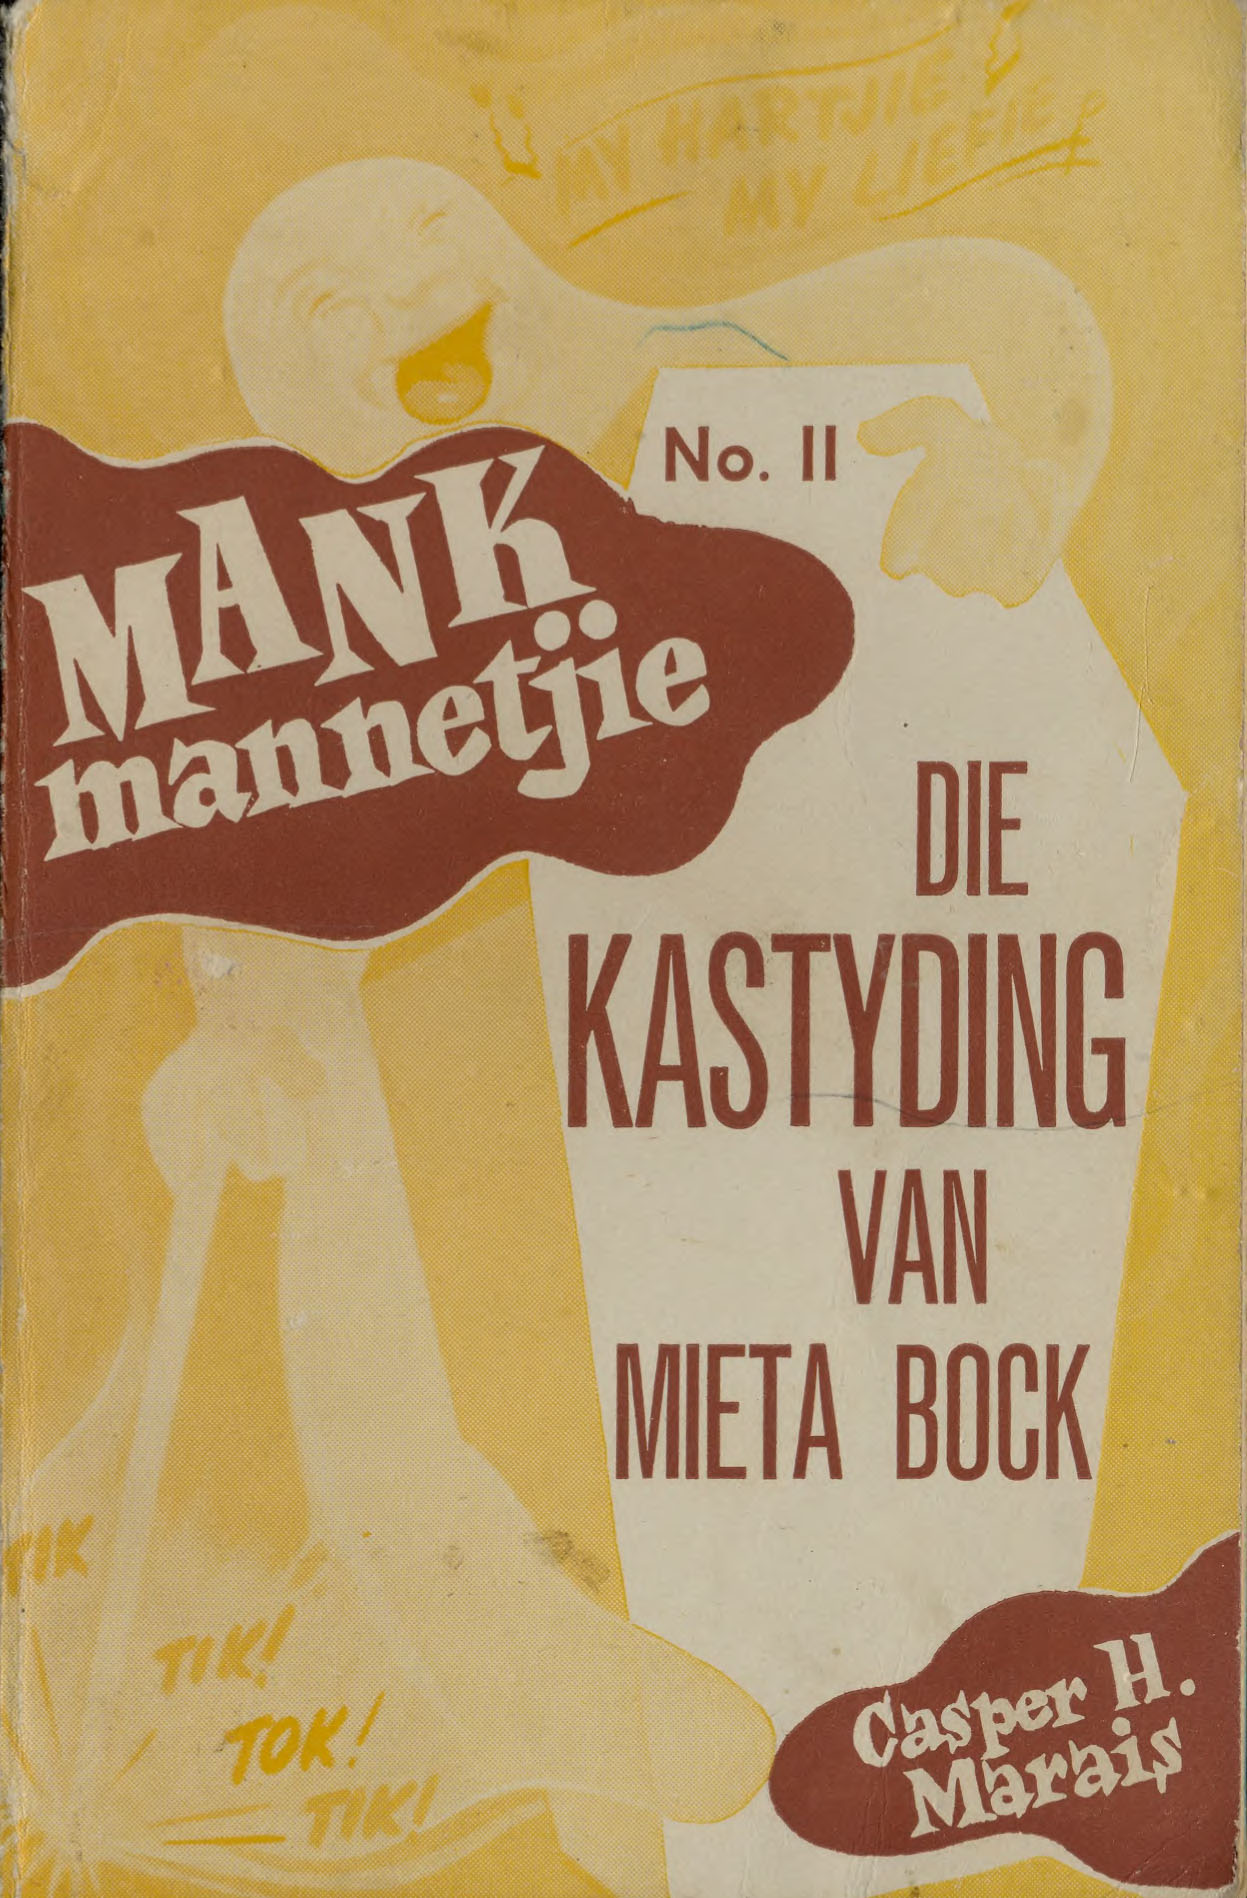 Die kastyding van Mieta Bock - Casper H. Marais (1951)